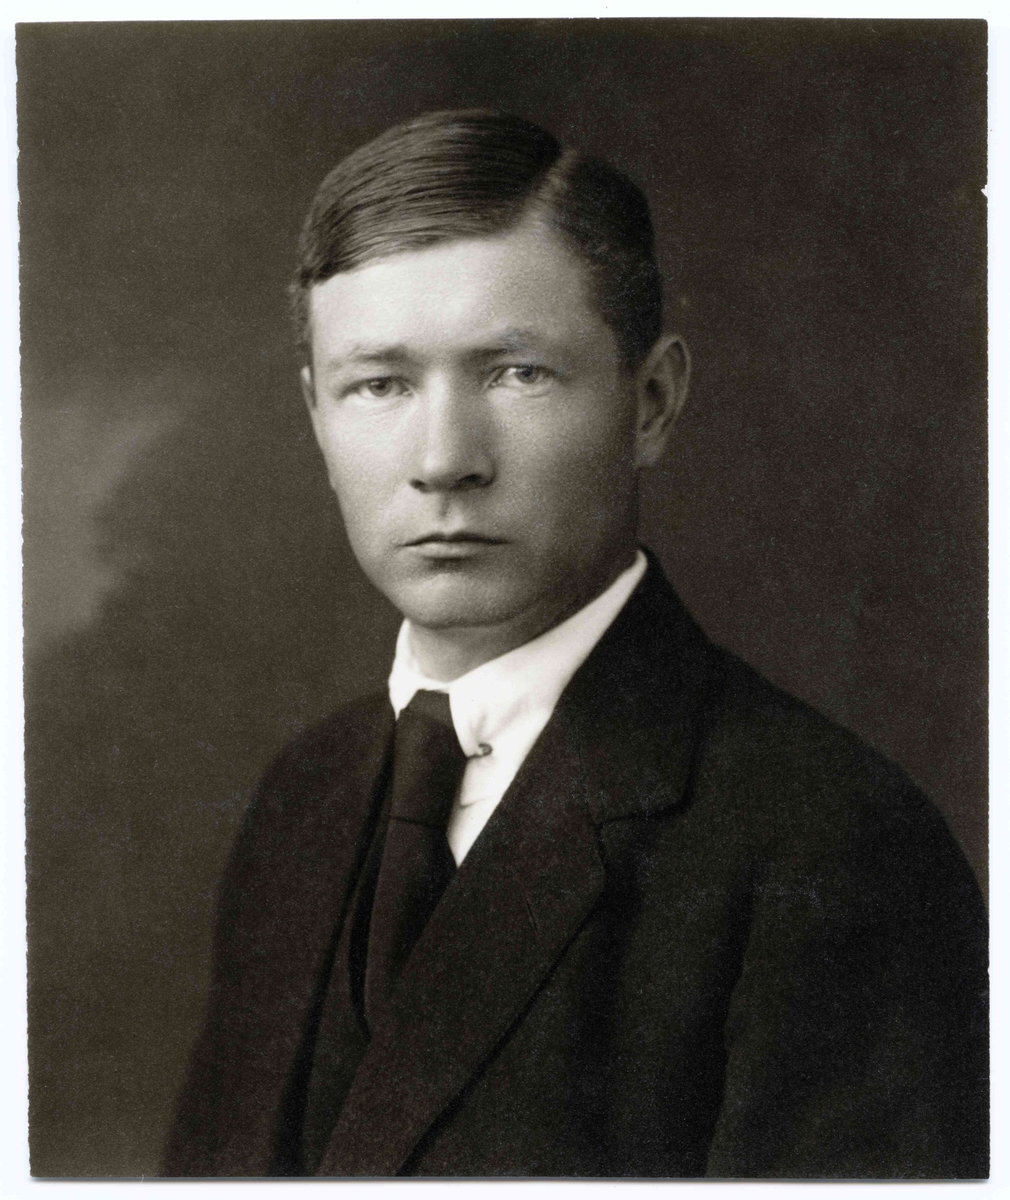 Biografiskt, personliga foton
Porträtt av en ung Osvald Almqvist.